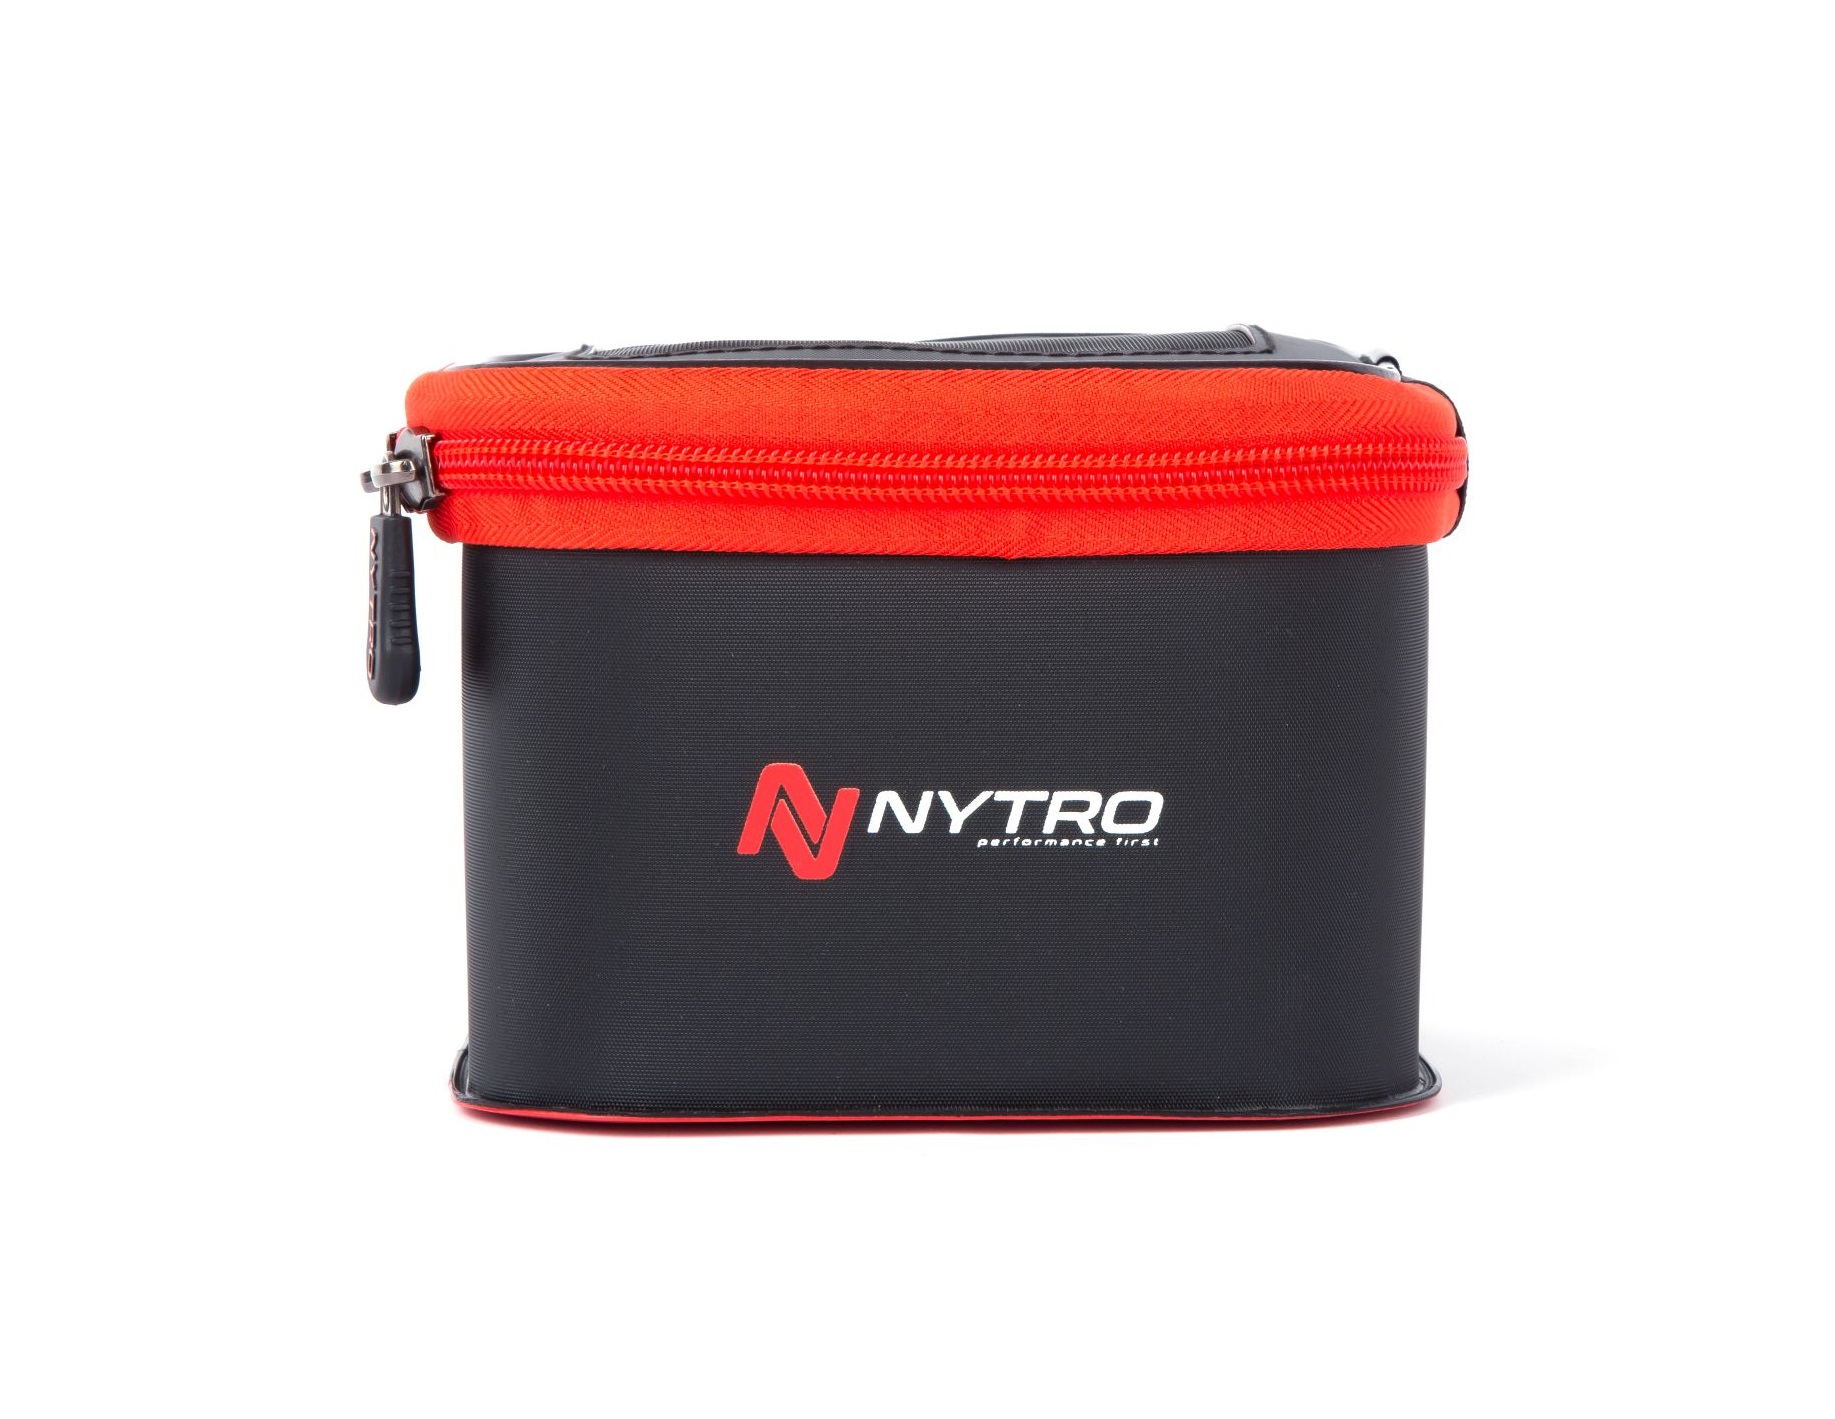 Nytro StarkX 1414 Live Bait Ventilation Bowl